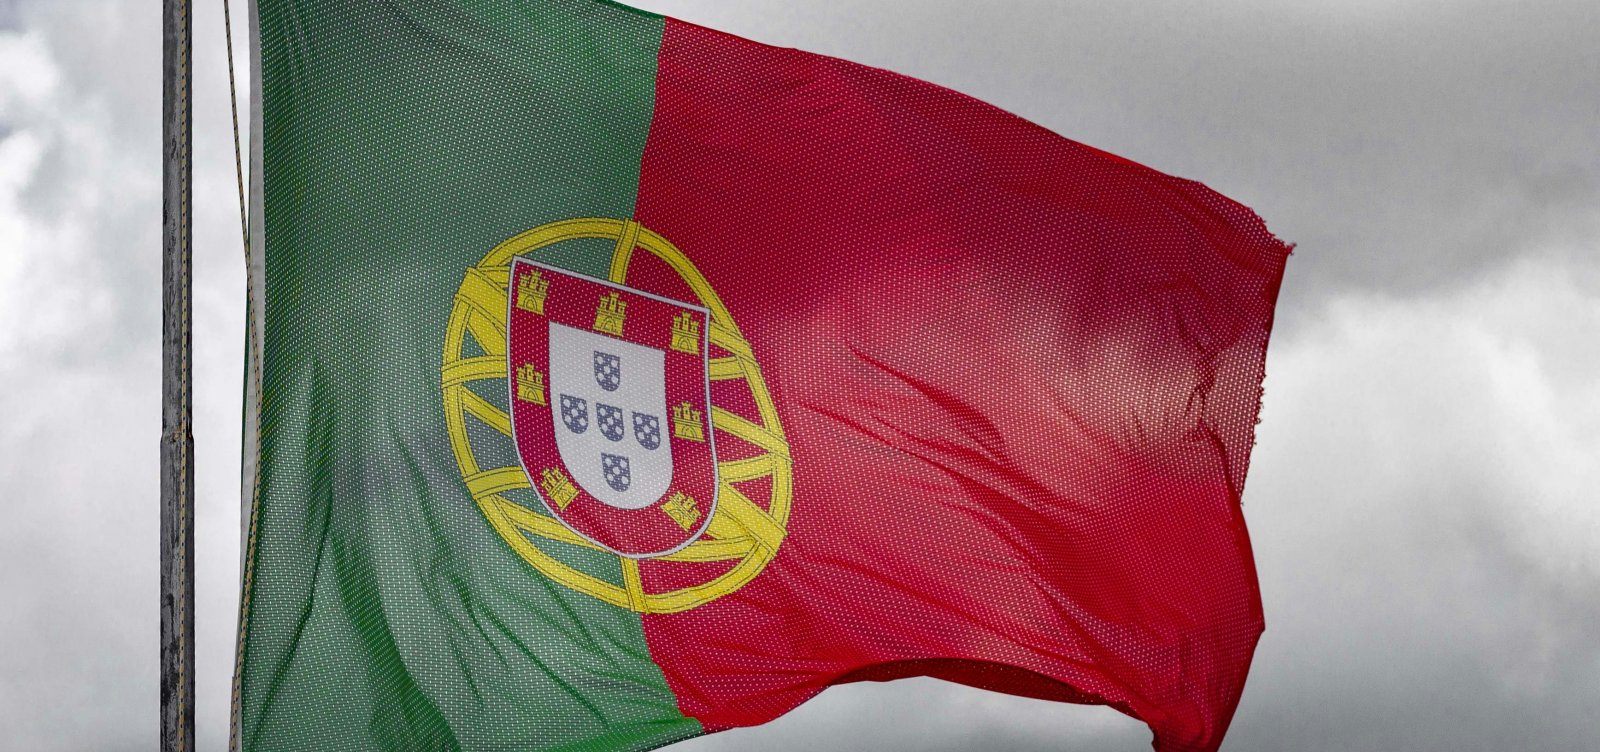 Portugal reconhece pela 1ª vez culpa por escravidão no Brasil